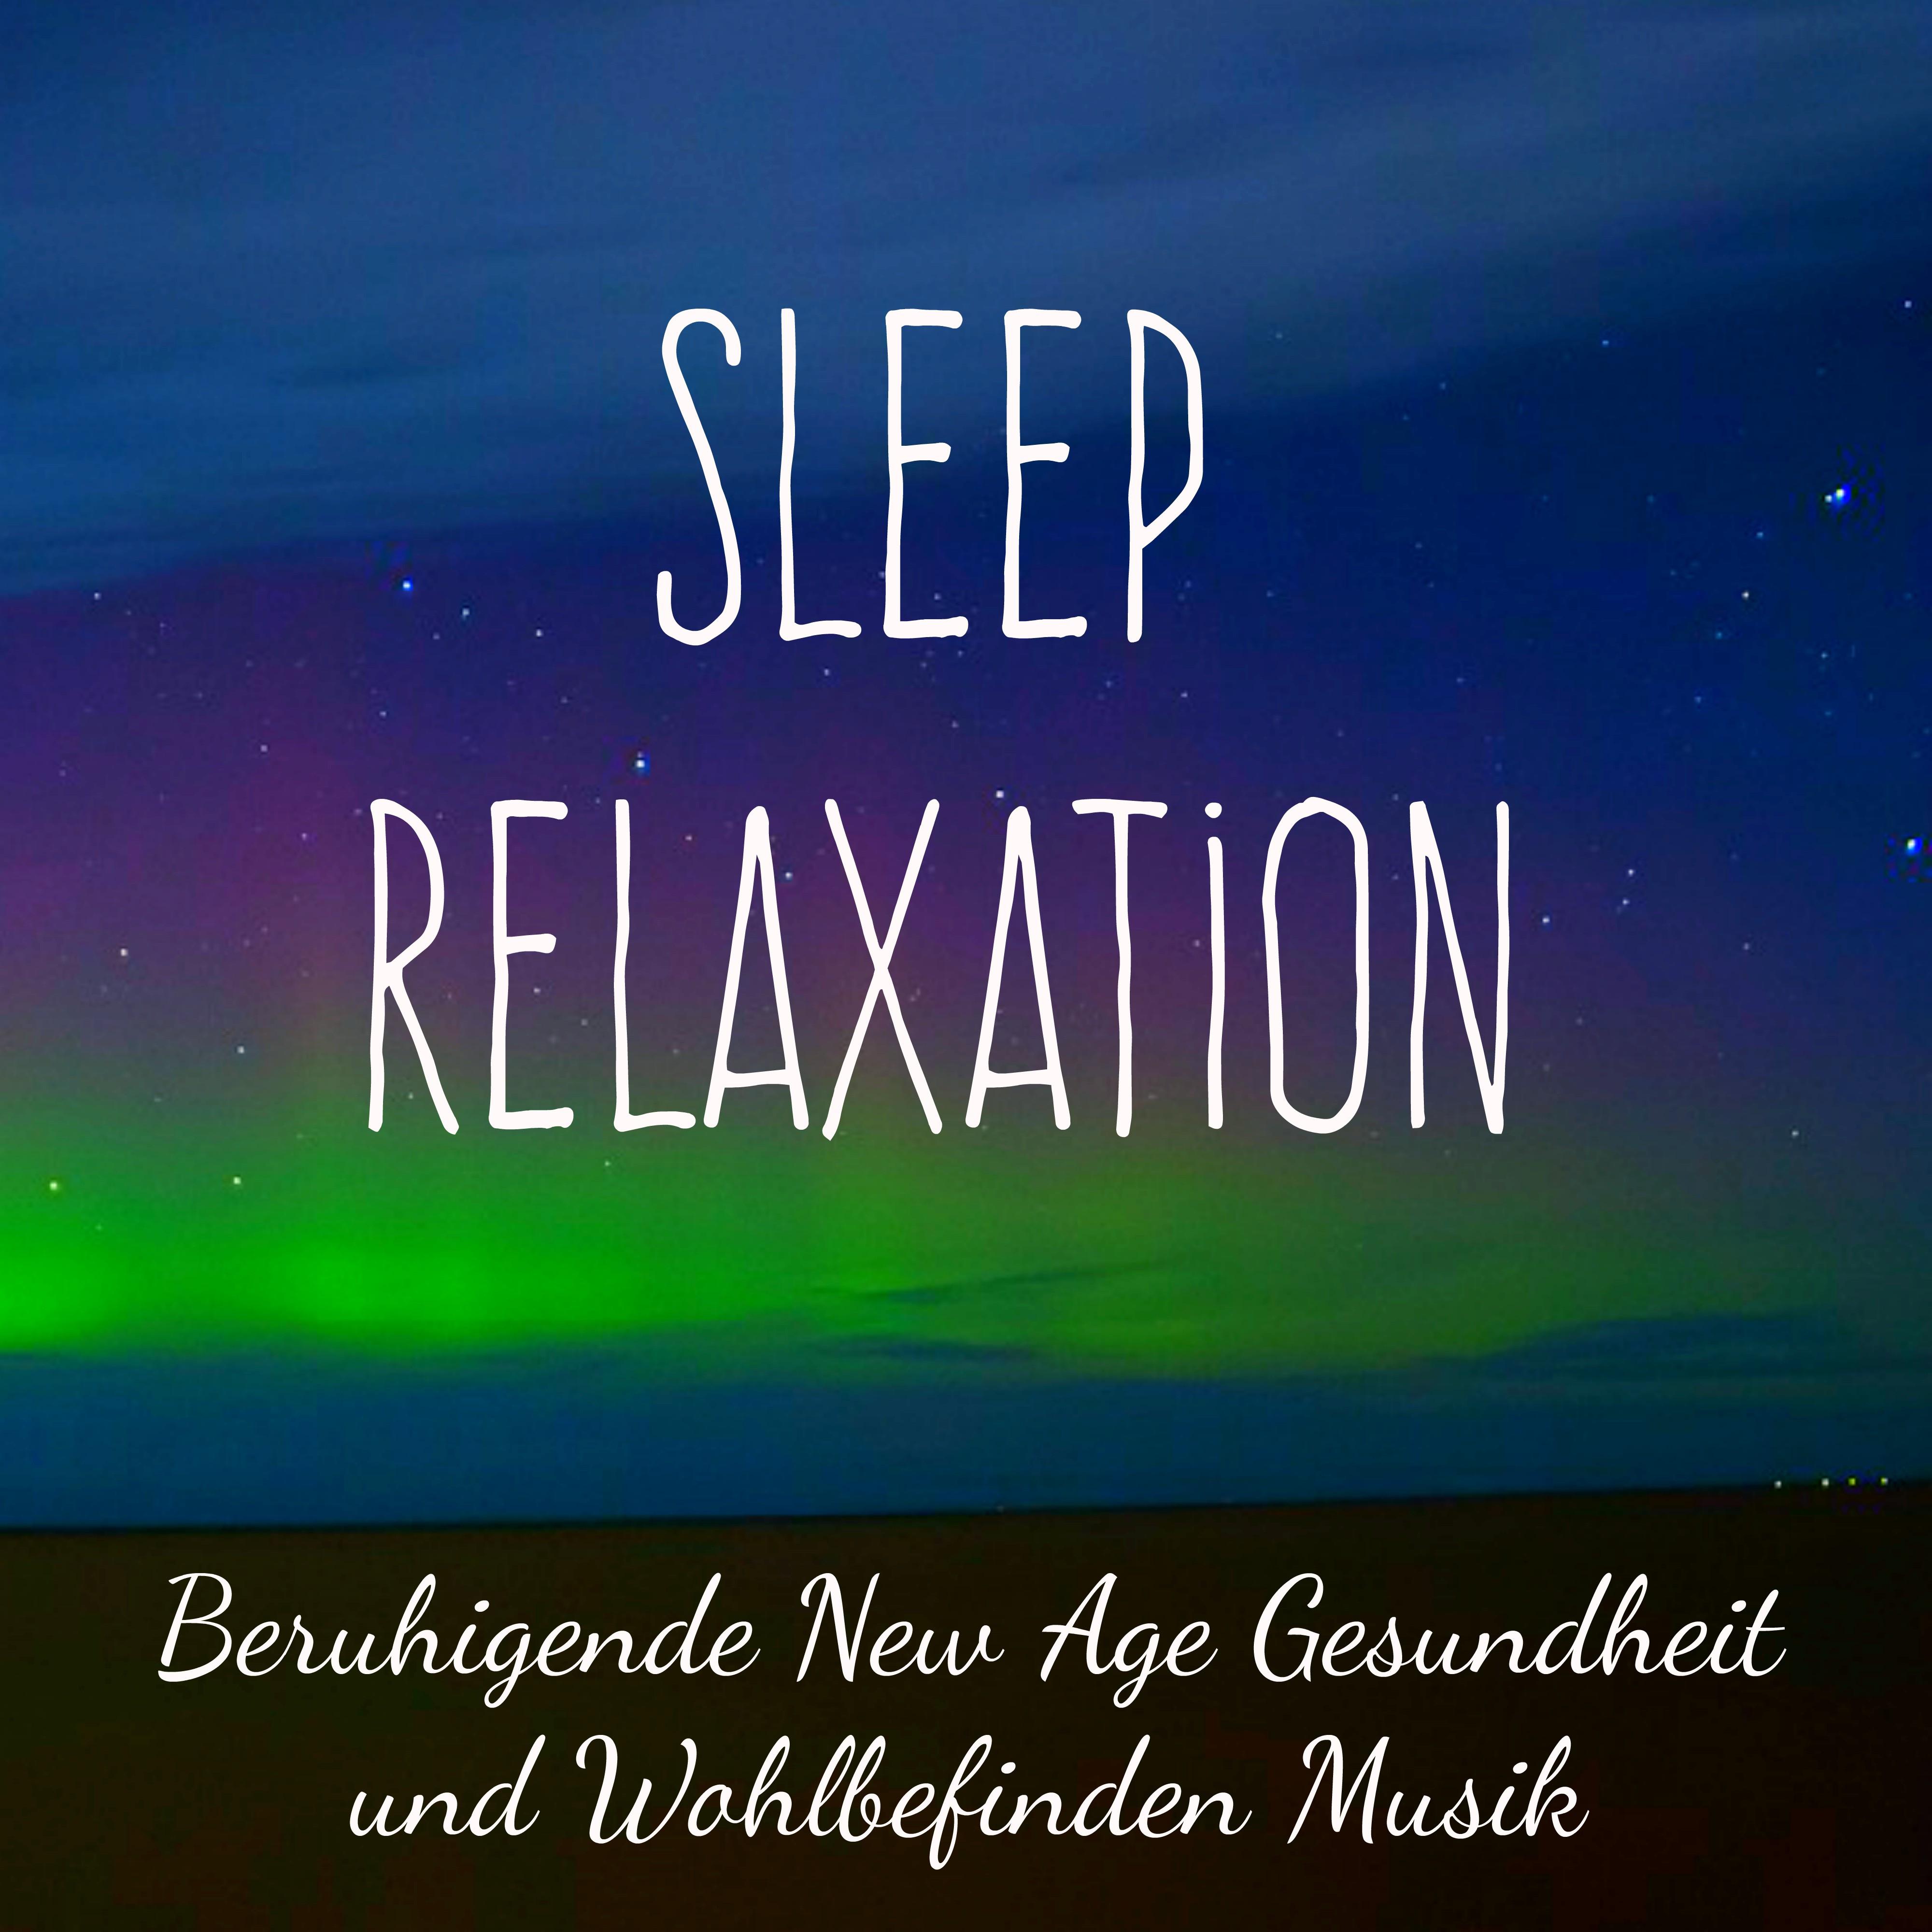 Sleep Relaxation  Beruhigende New Age Gesundheit und Wohlbefinden Musik mit Tiefes Atmen Achtsamkeitsmeditation mit Natur Instrumental Heilende Ger usche